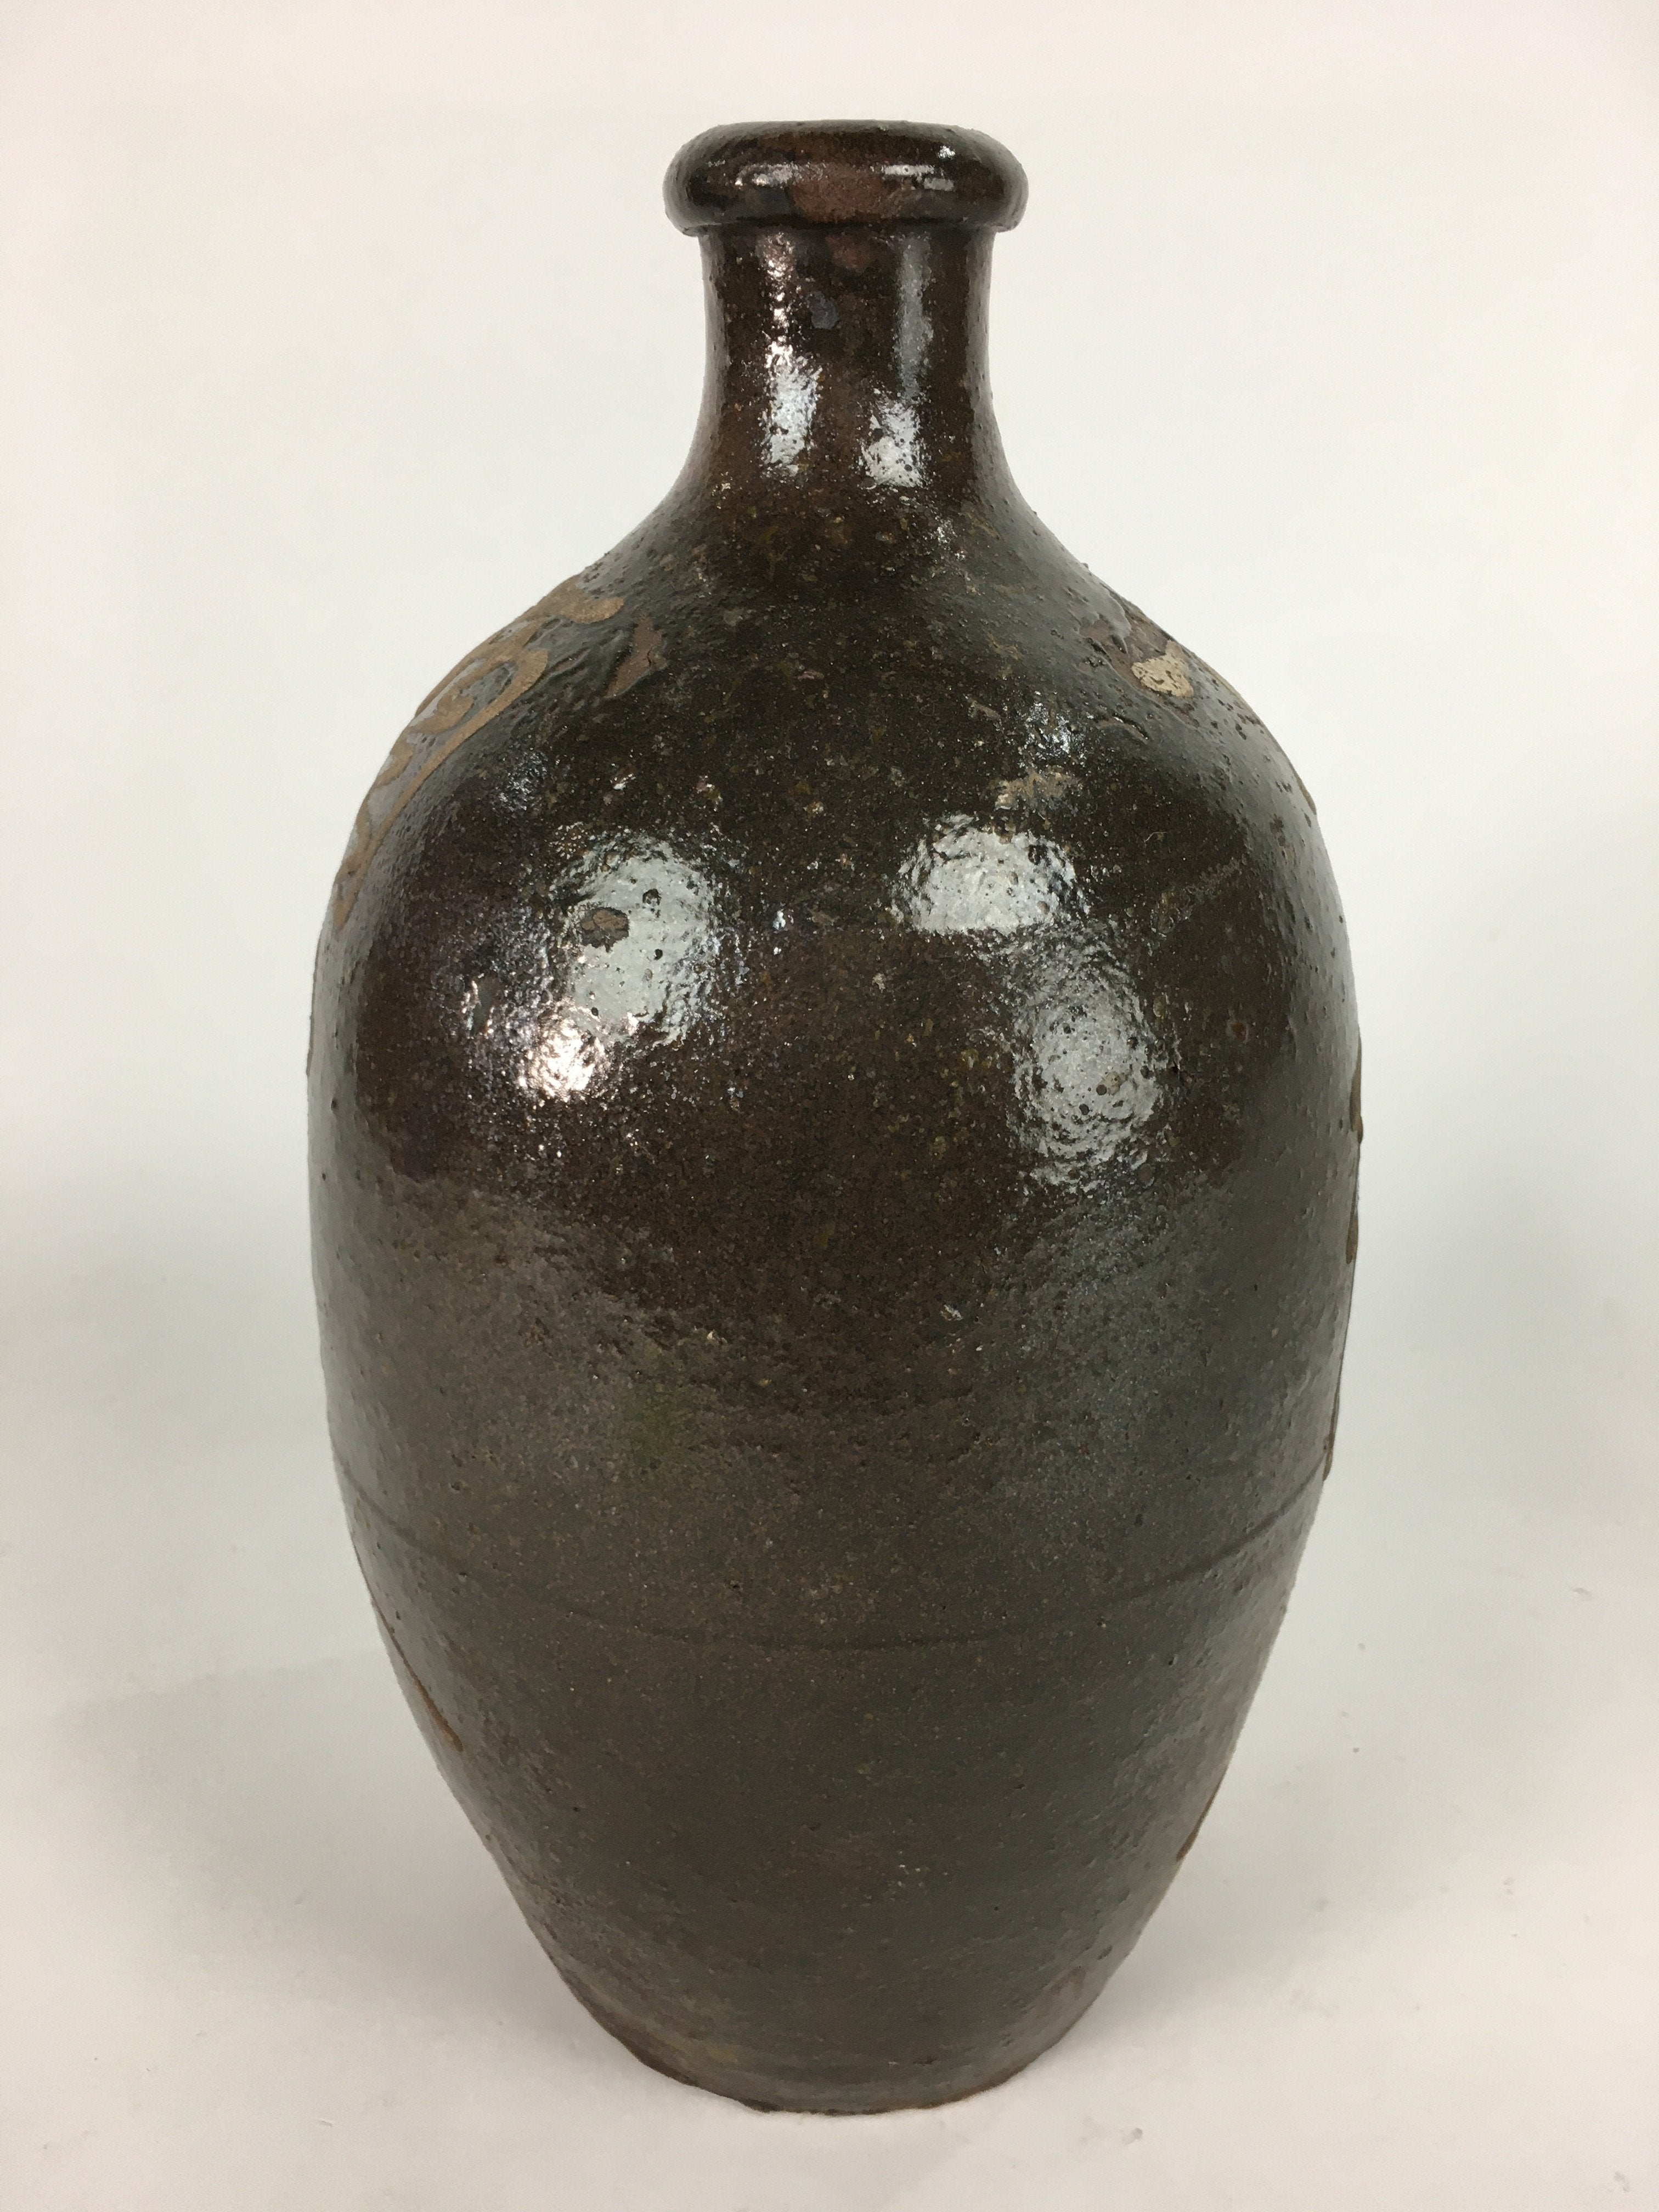 Japanese Ceramic Sake Bottle Vtg Tokkuri Pottery Kayoi-Tokkuri Brown TS293